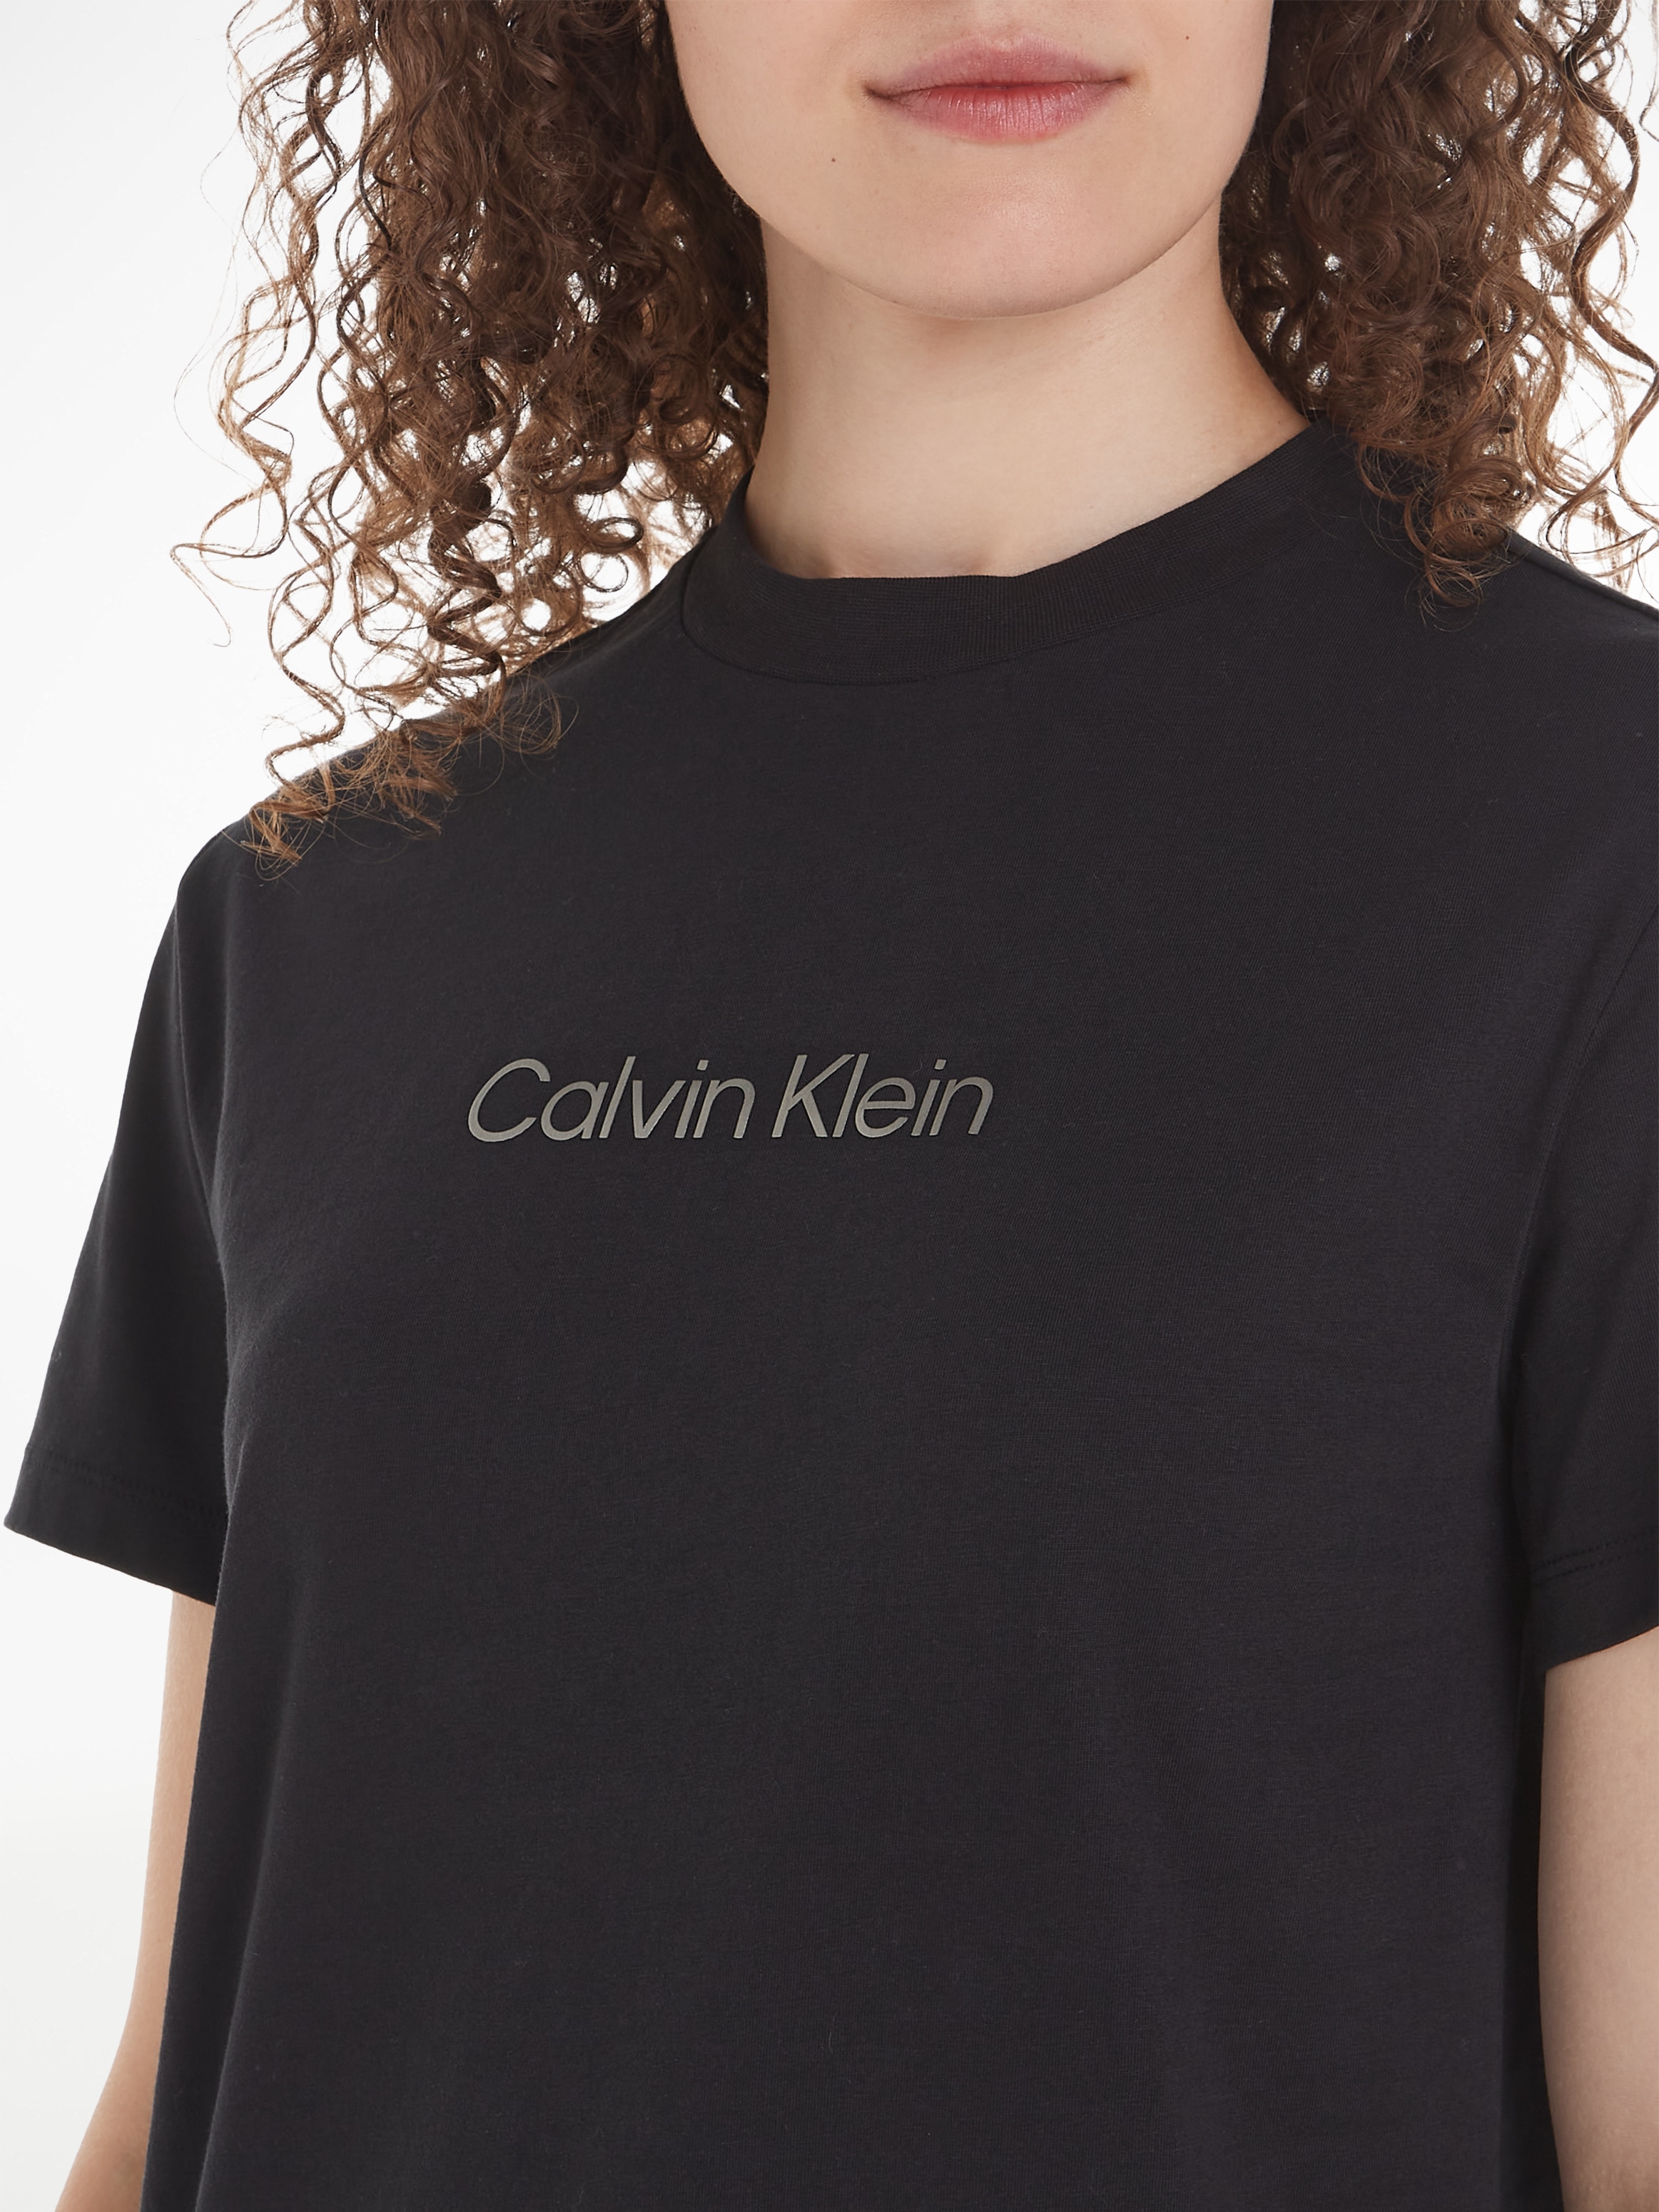 Calvin Klein der OTTO auf »HERO online Klein Calvin Brust T-SHIRT«, Print bei T-Shirt mit METALLIC LOGO